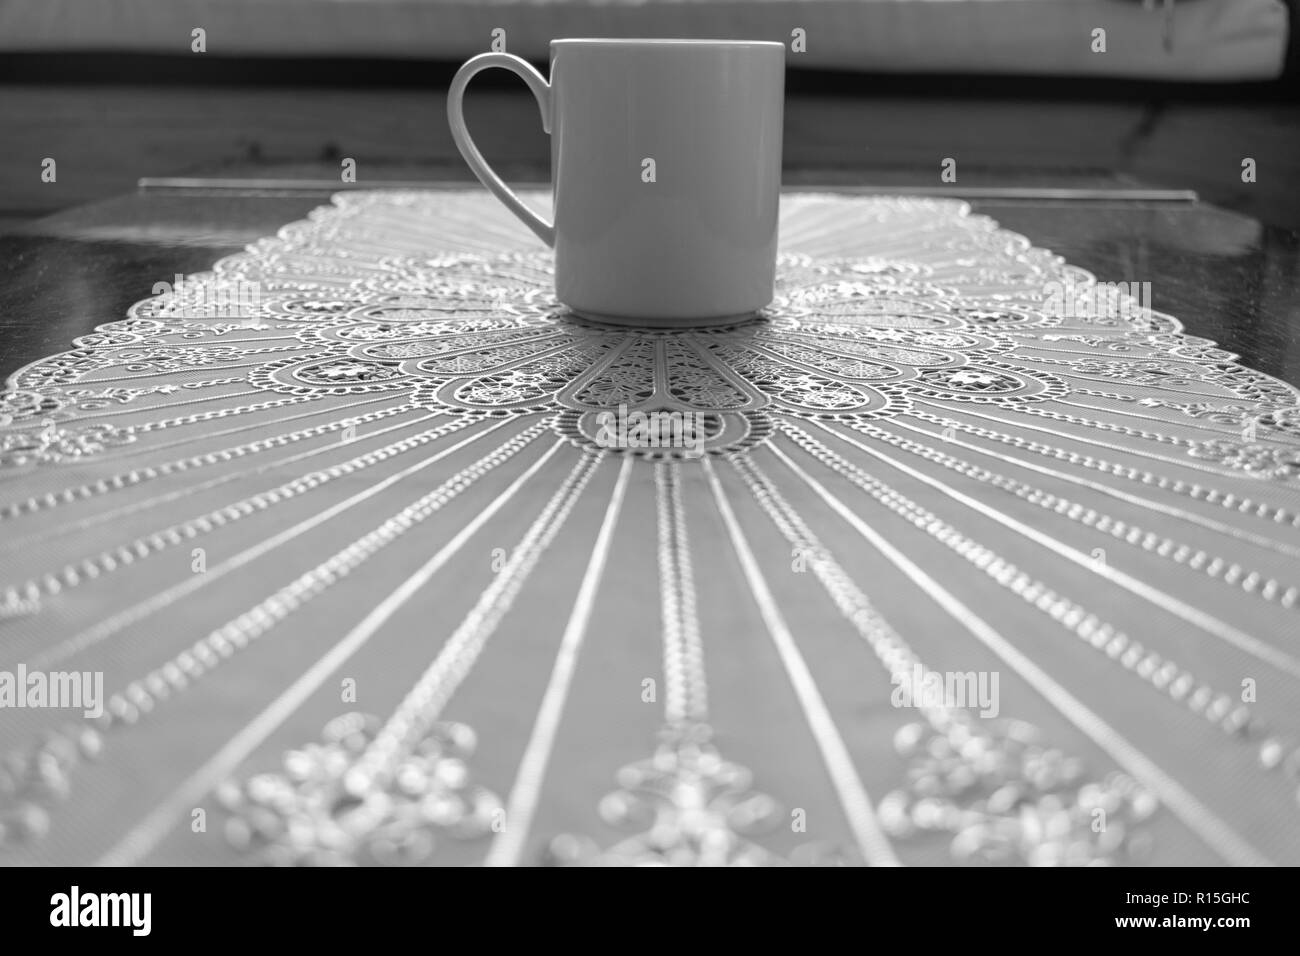 Low angle droit d'une tasse à café blanc placé sur une table, motif dentelle blanche Banque D'Images